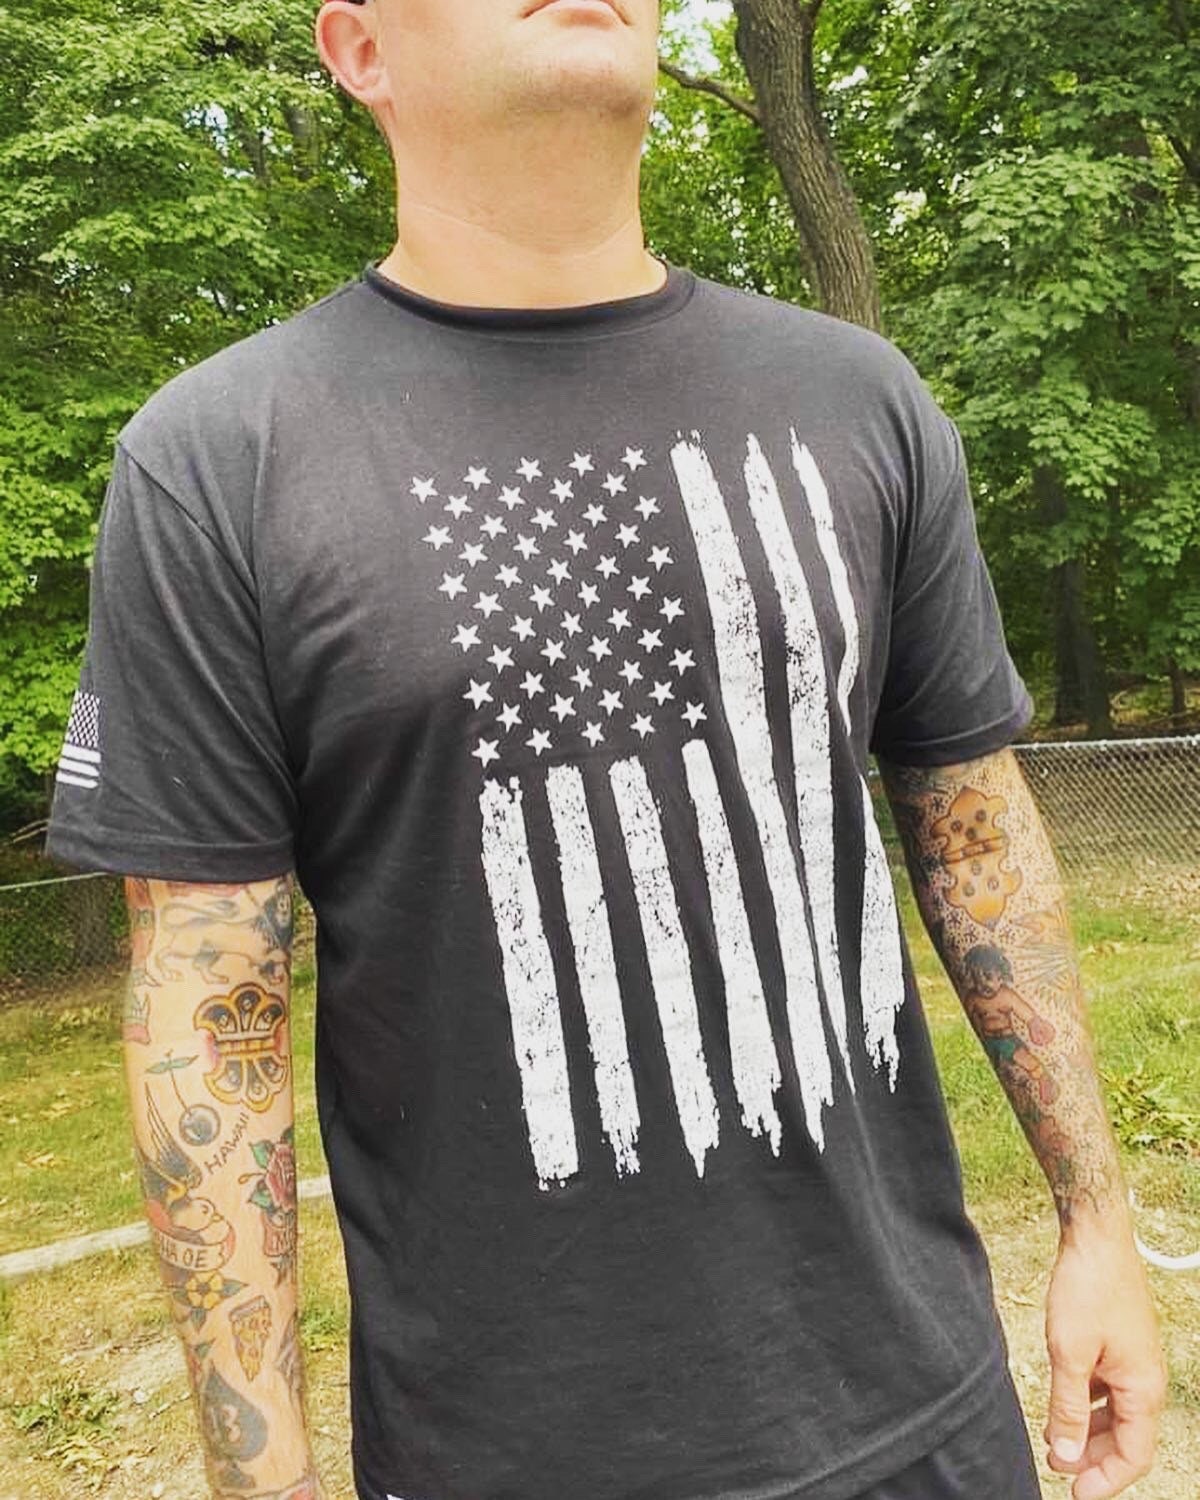 Navy Stewburner Distressed Shirt - Etsy